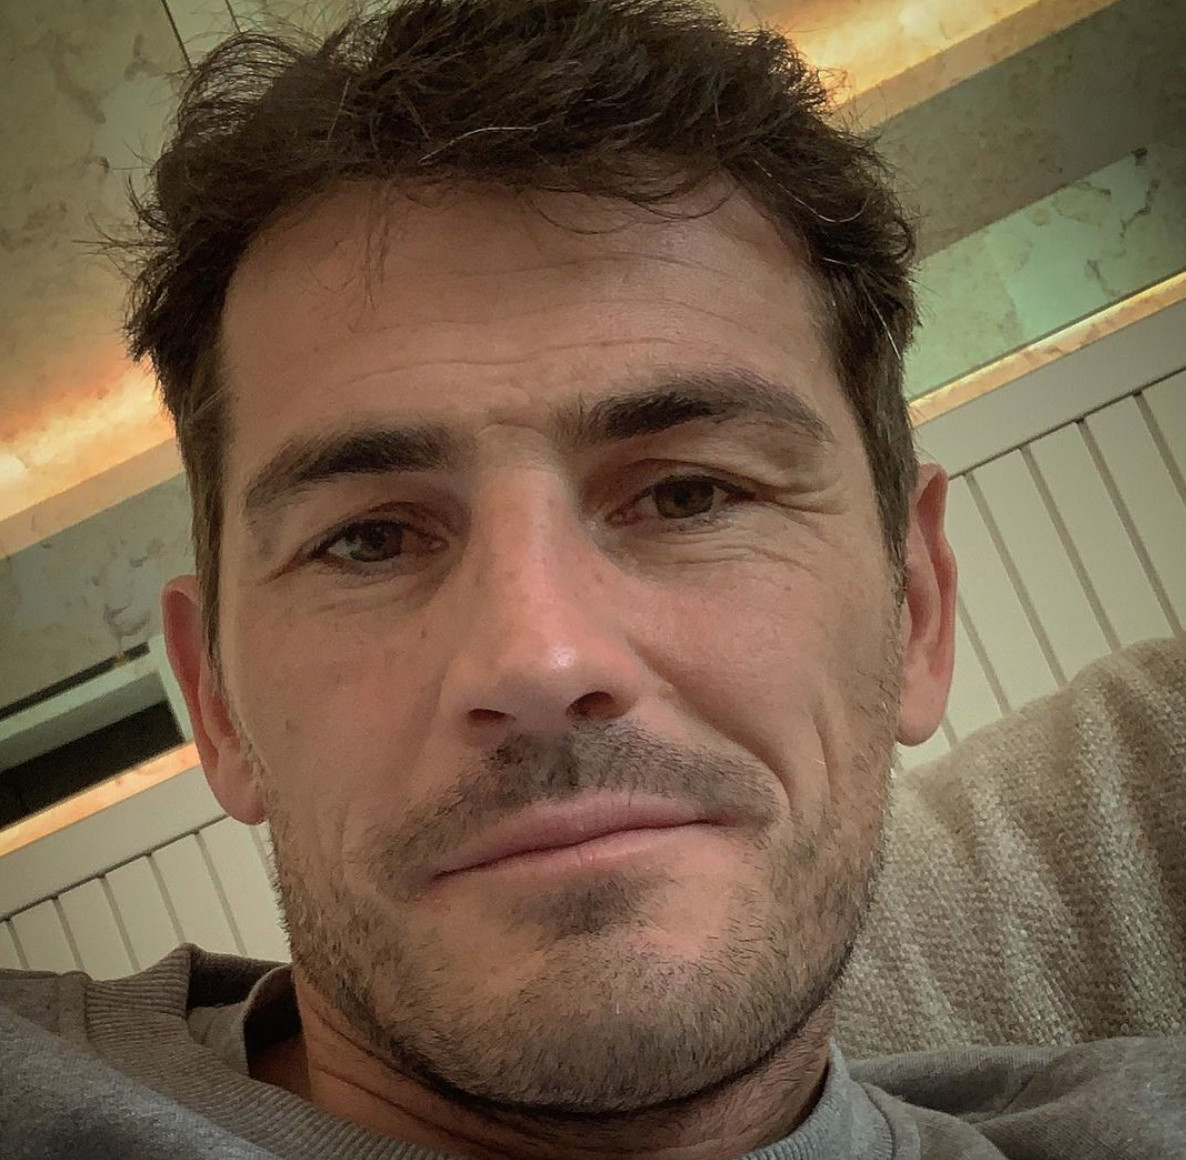 Iker Casillas preocupa a sus fans